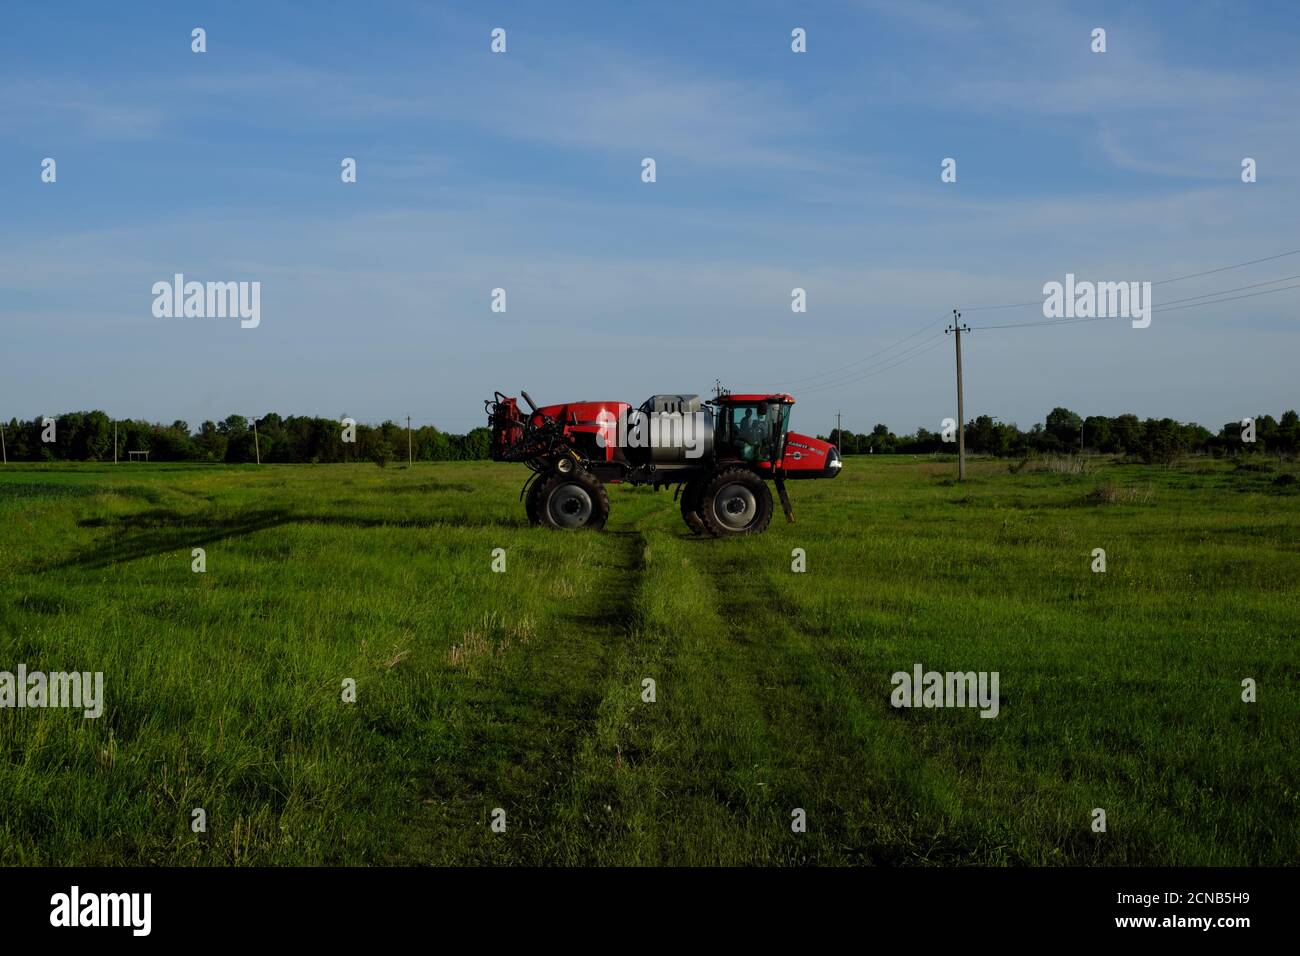 Regione di Chernihiv, Ucraina, 18 maggio 2019. Un trattore su ruote alte progettato per l'irrigazione di campi. Macchine agricole si trova sul campo. Foto Stock